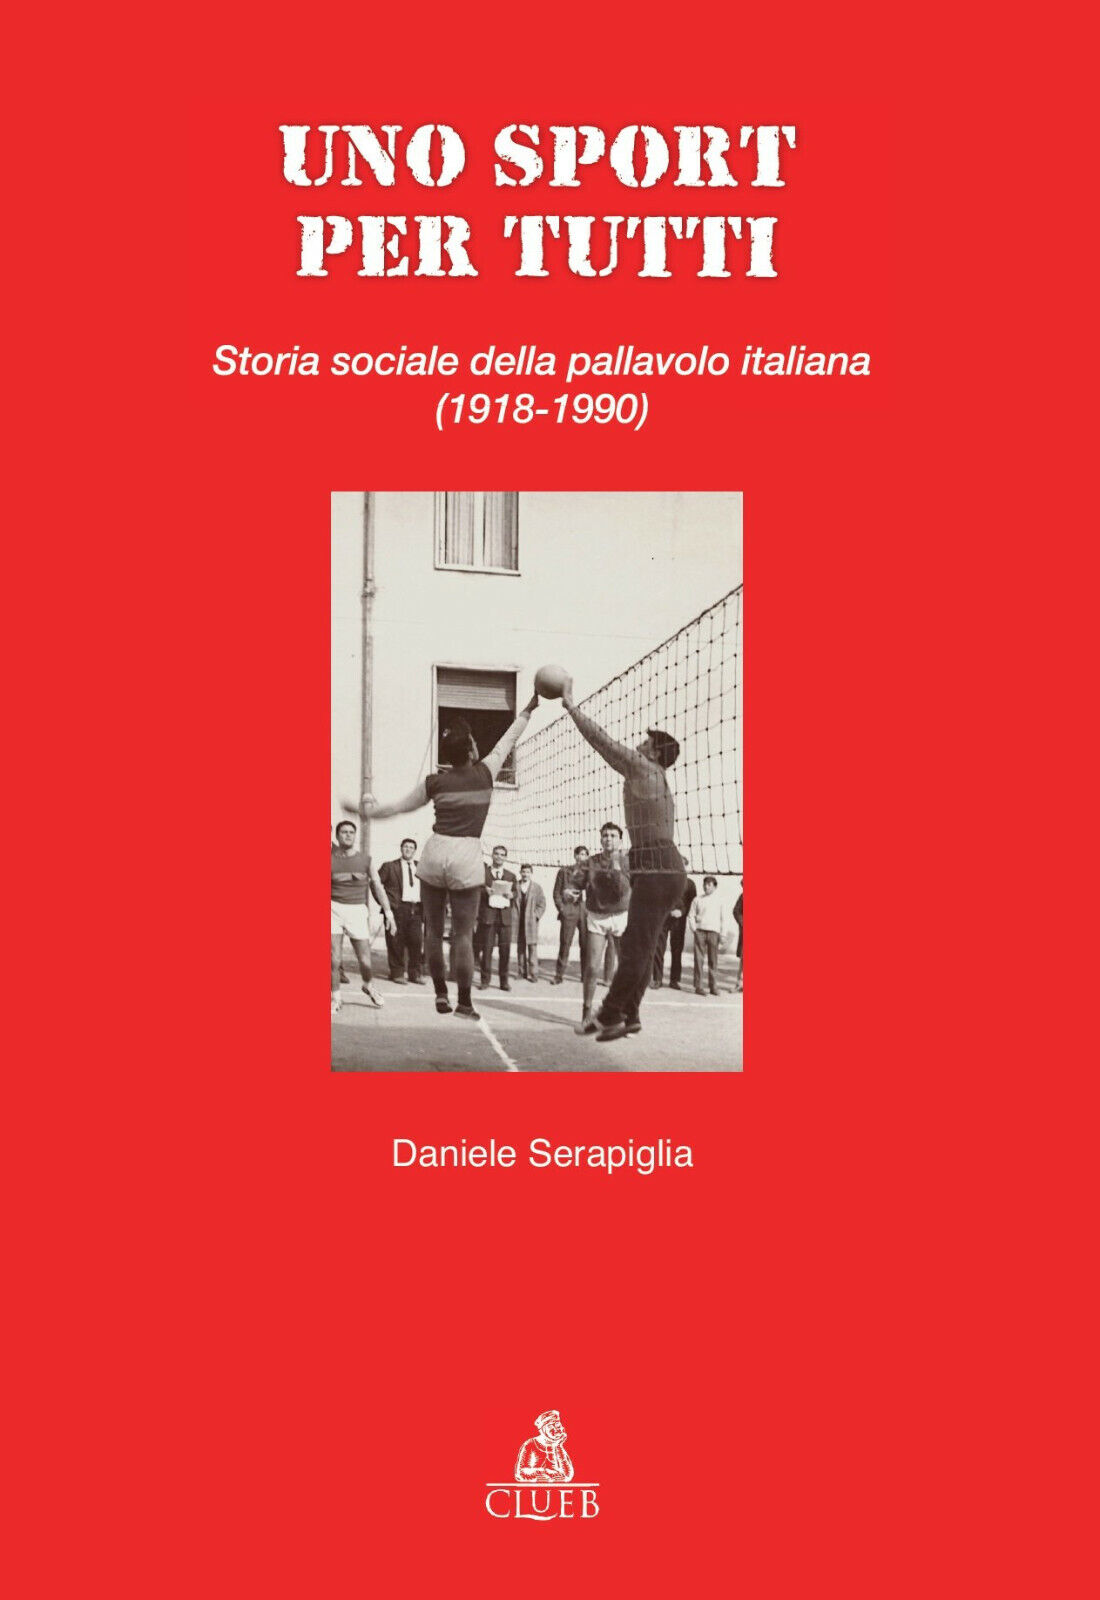 Uno sport per tutti - Daniele Serapiglia - CLUEB, 2018 libro usato